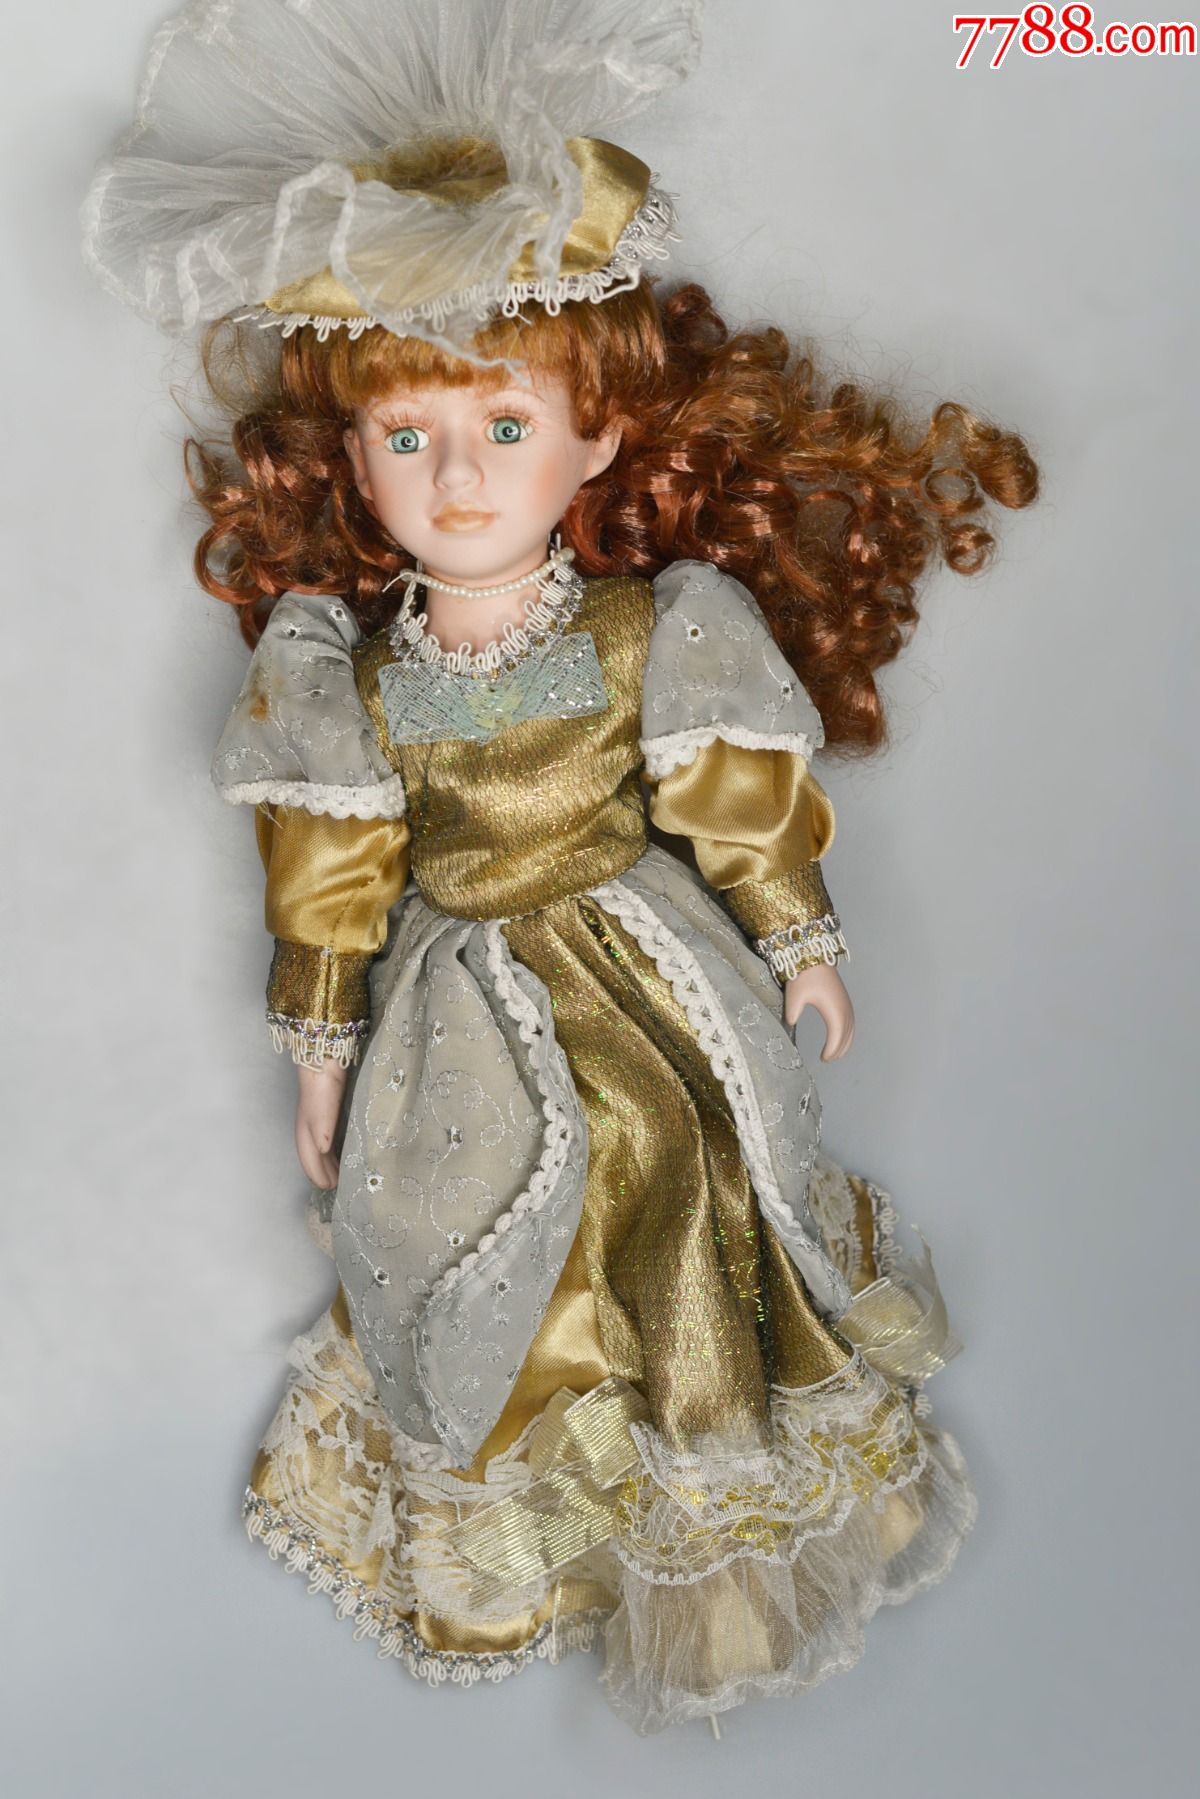 西洋古董欧洲德国回流玩偶摆件玩偶老玩具老娃娃收藏级欧洲老货